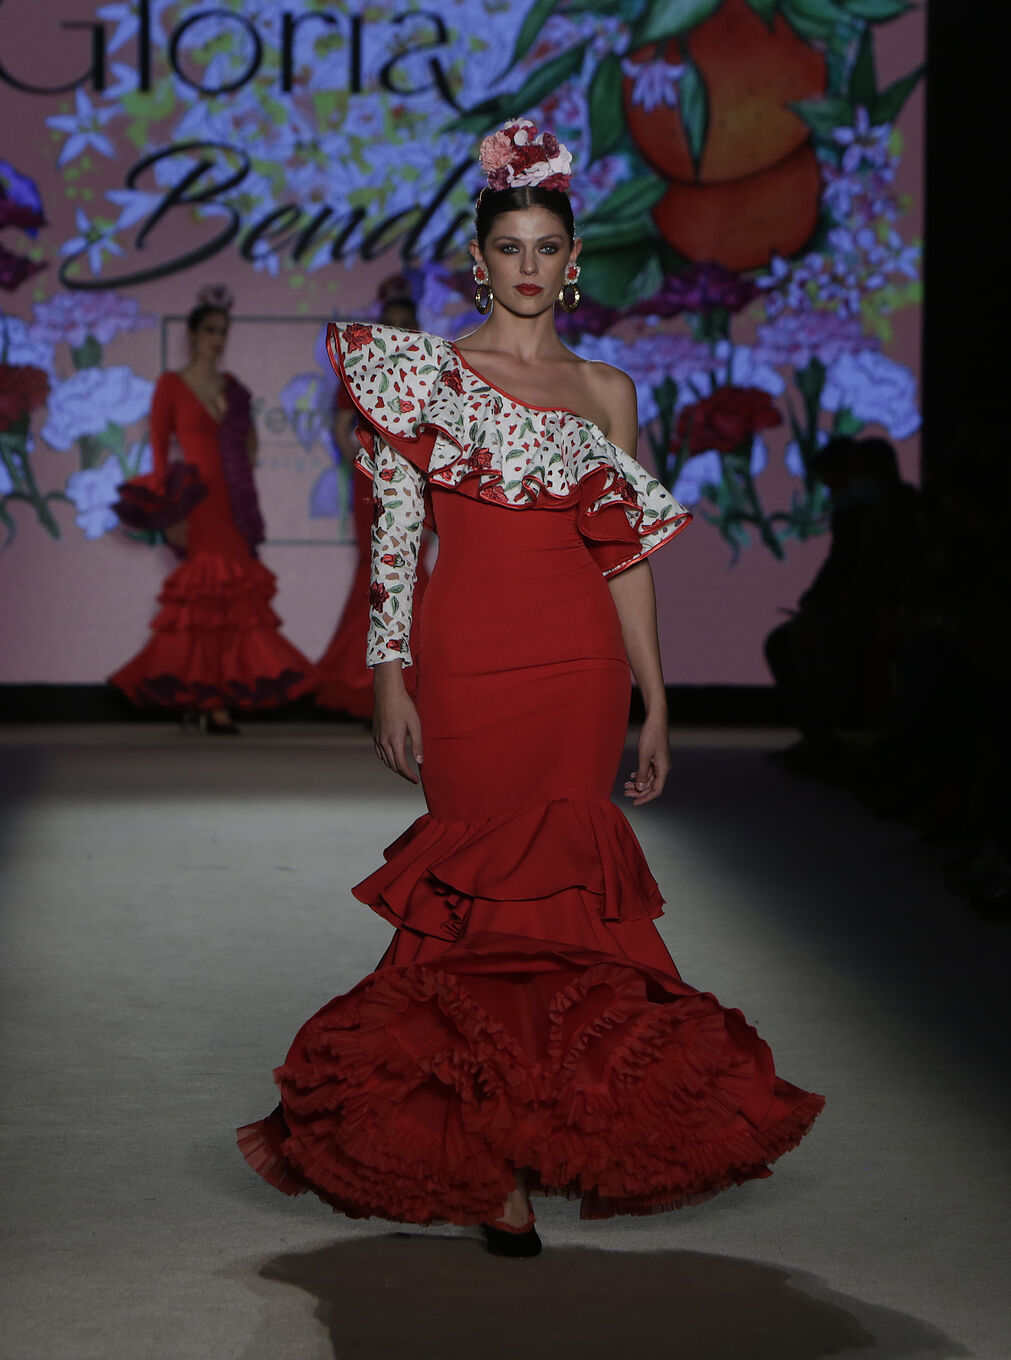 El desfile de Ana Ferreiro en We Love Flamenco 2022, todas las fotos.